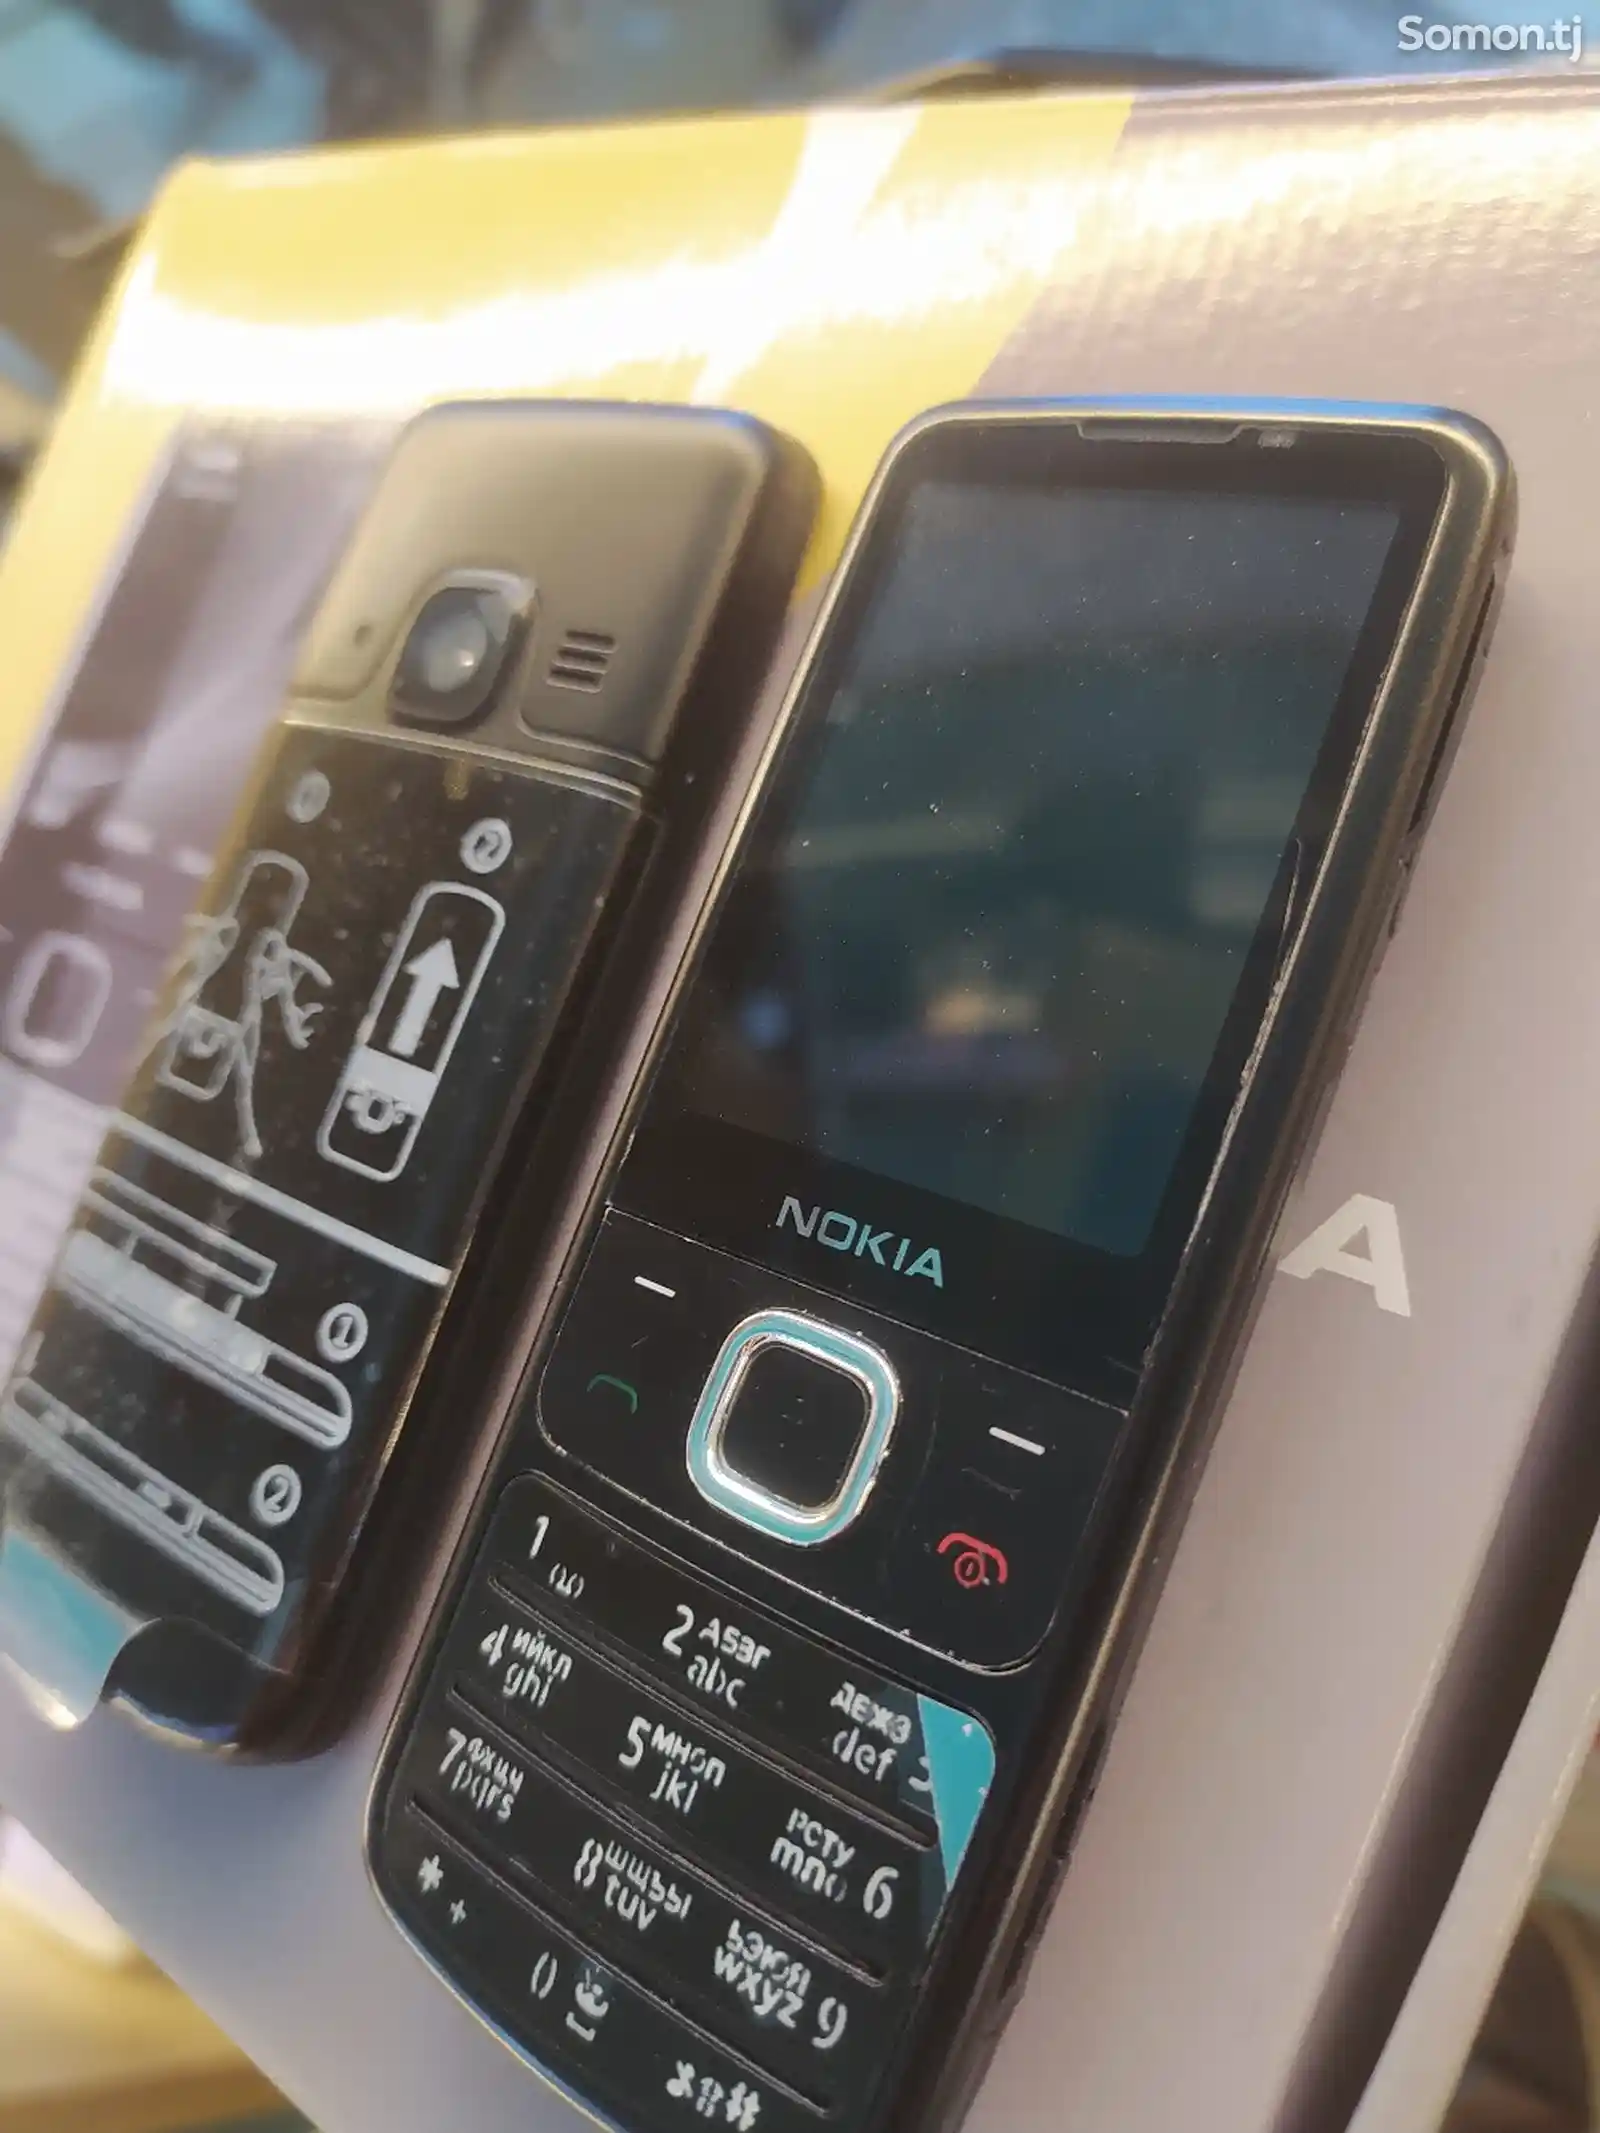 Nokia 6700-2